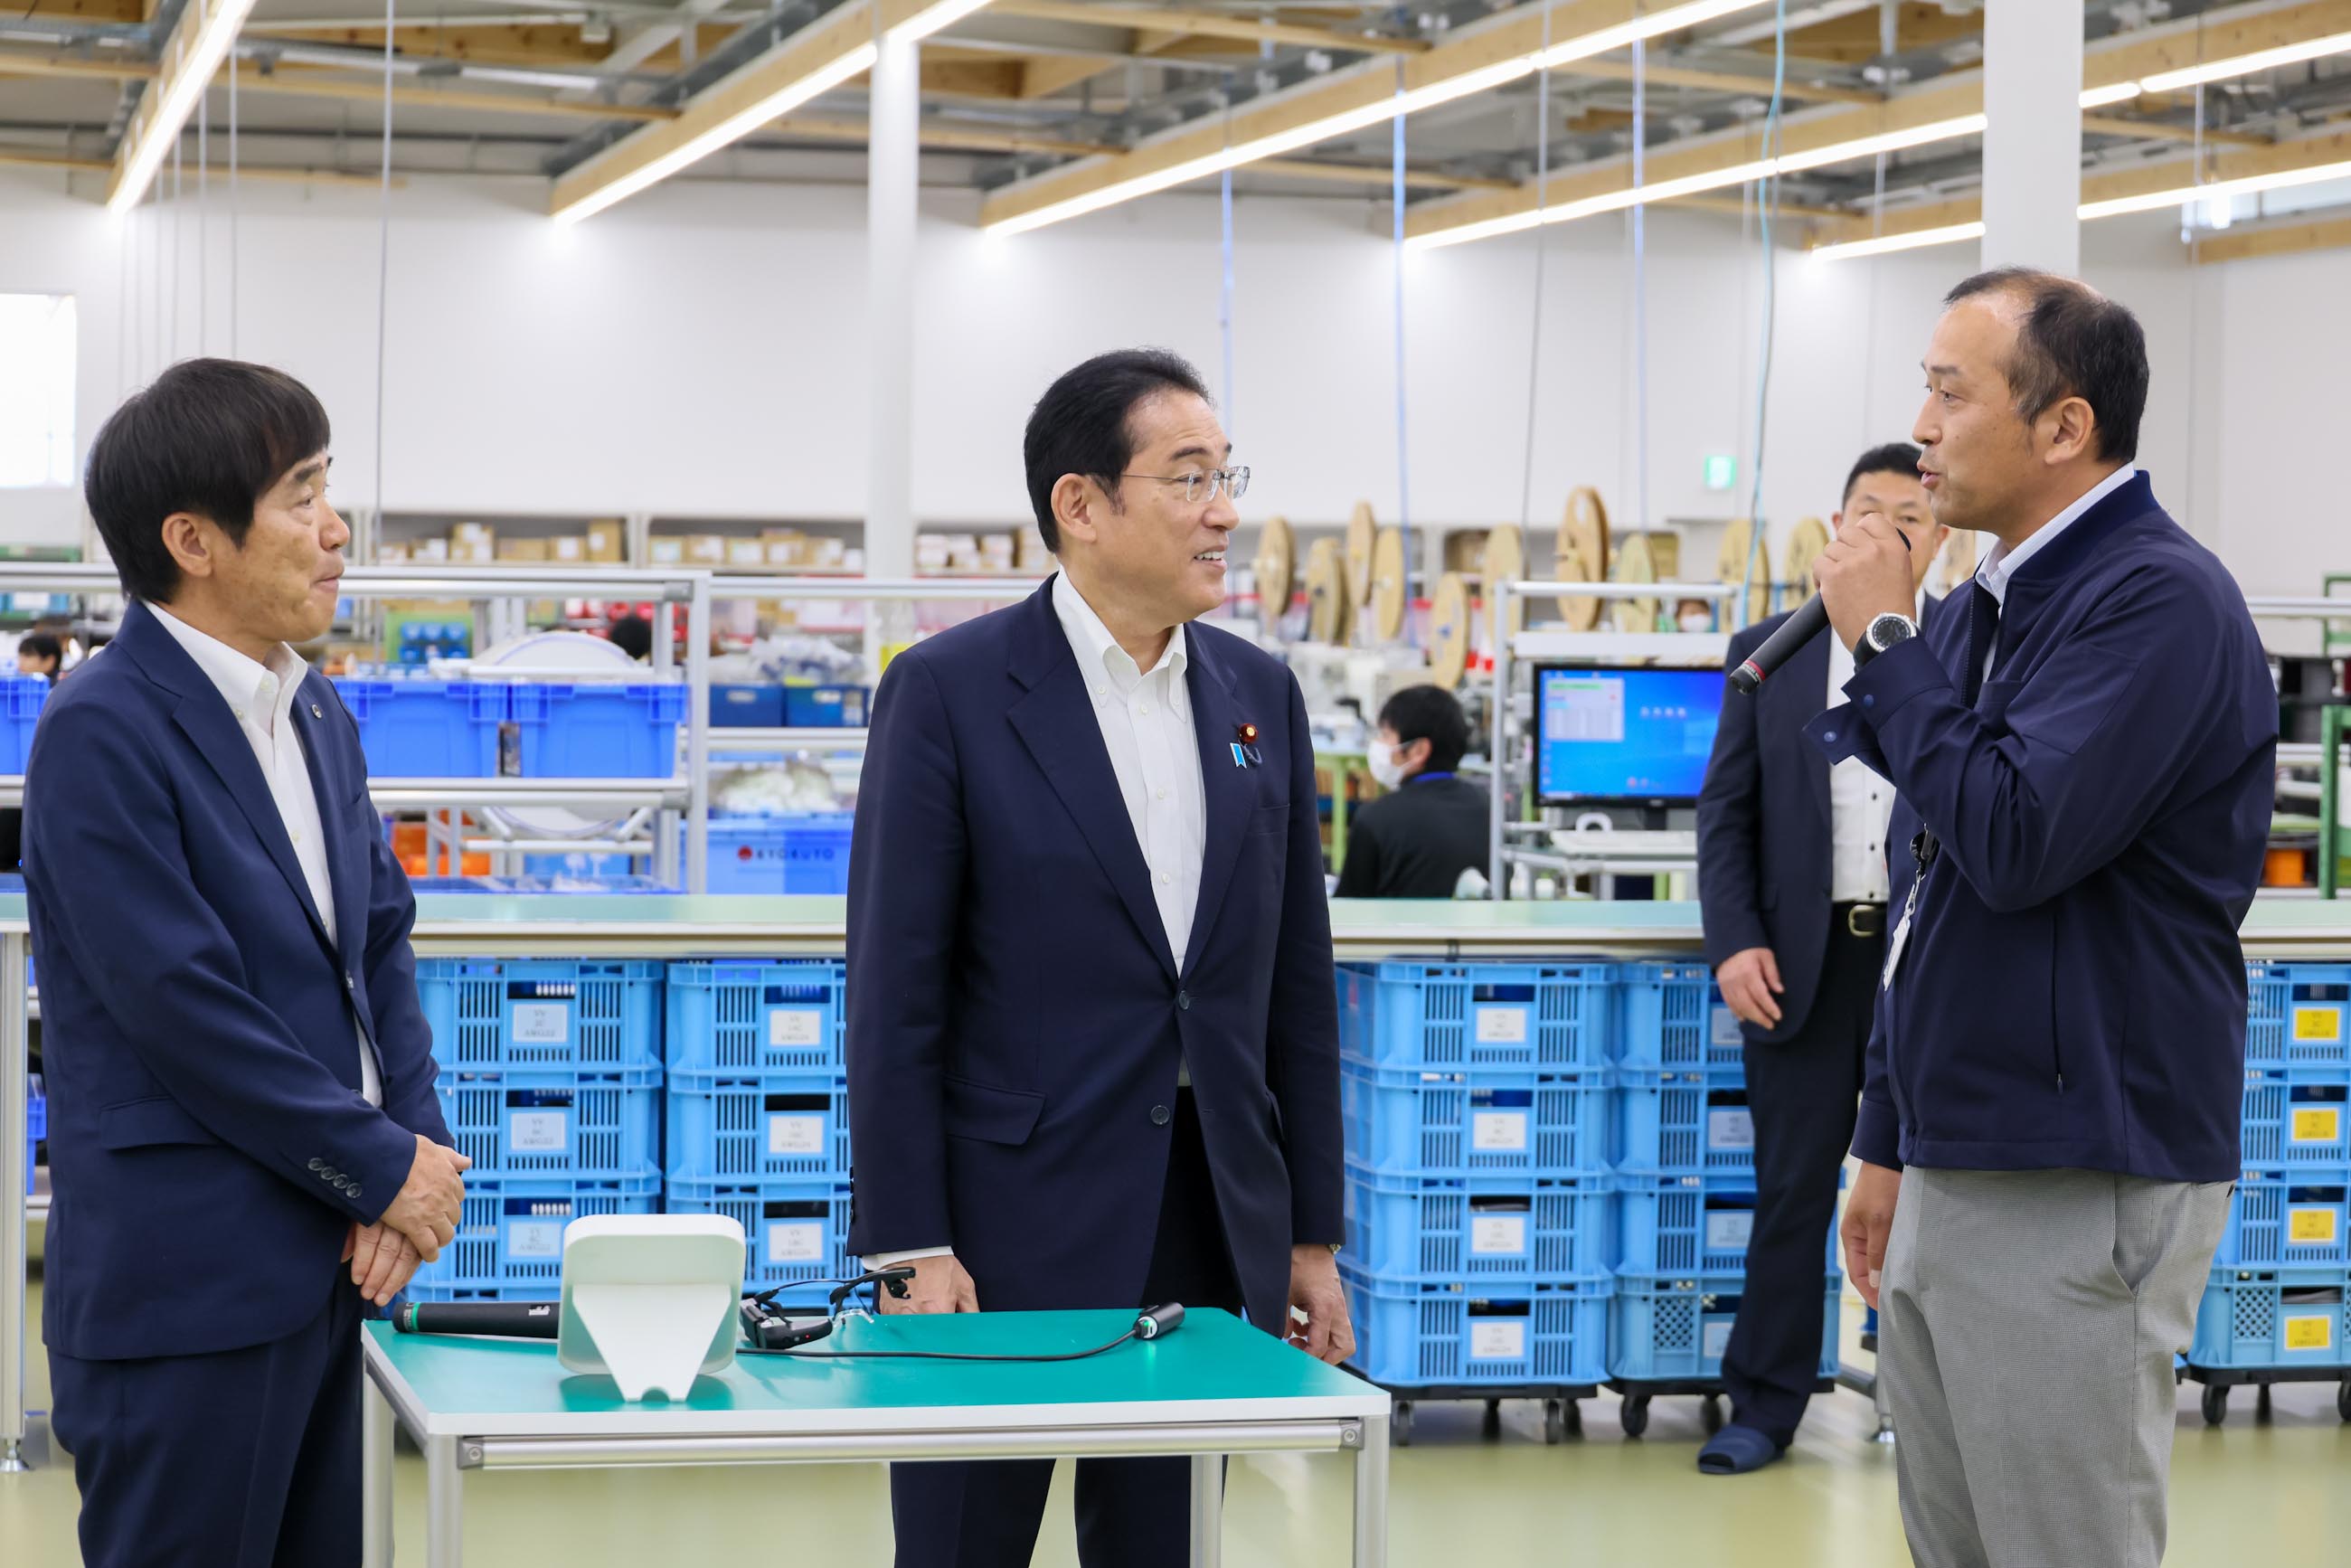 岸田首相视察一家生产电子零部件的企业3